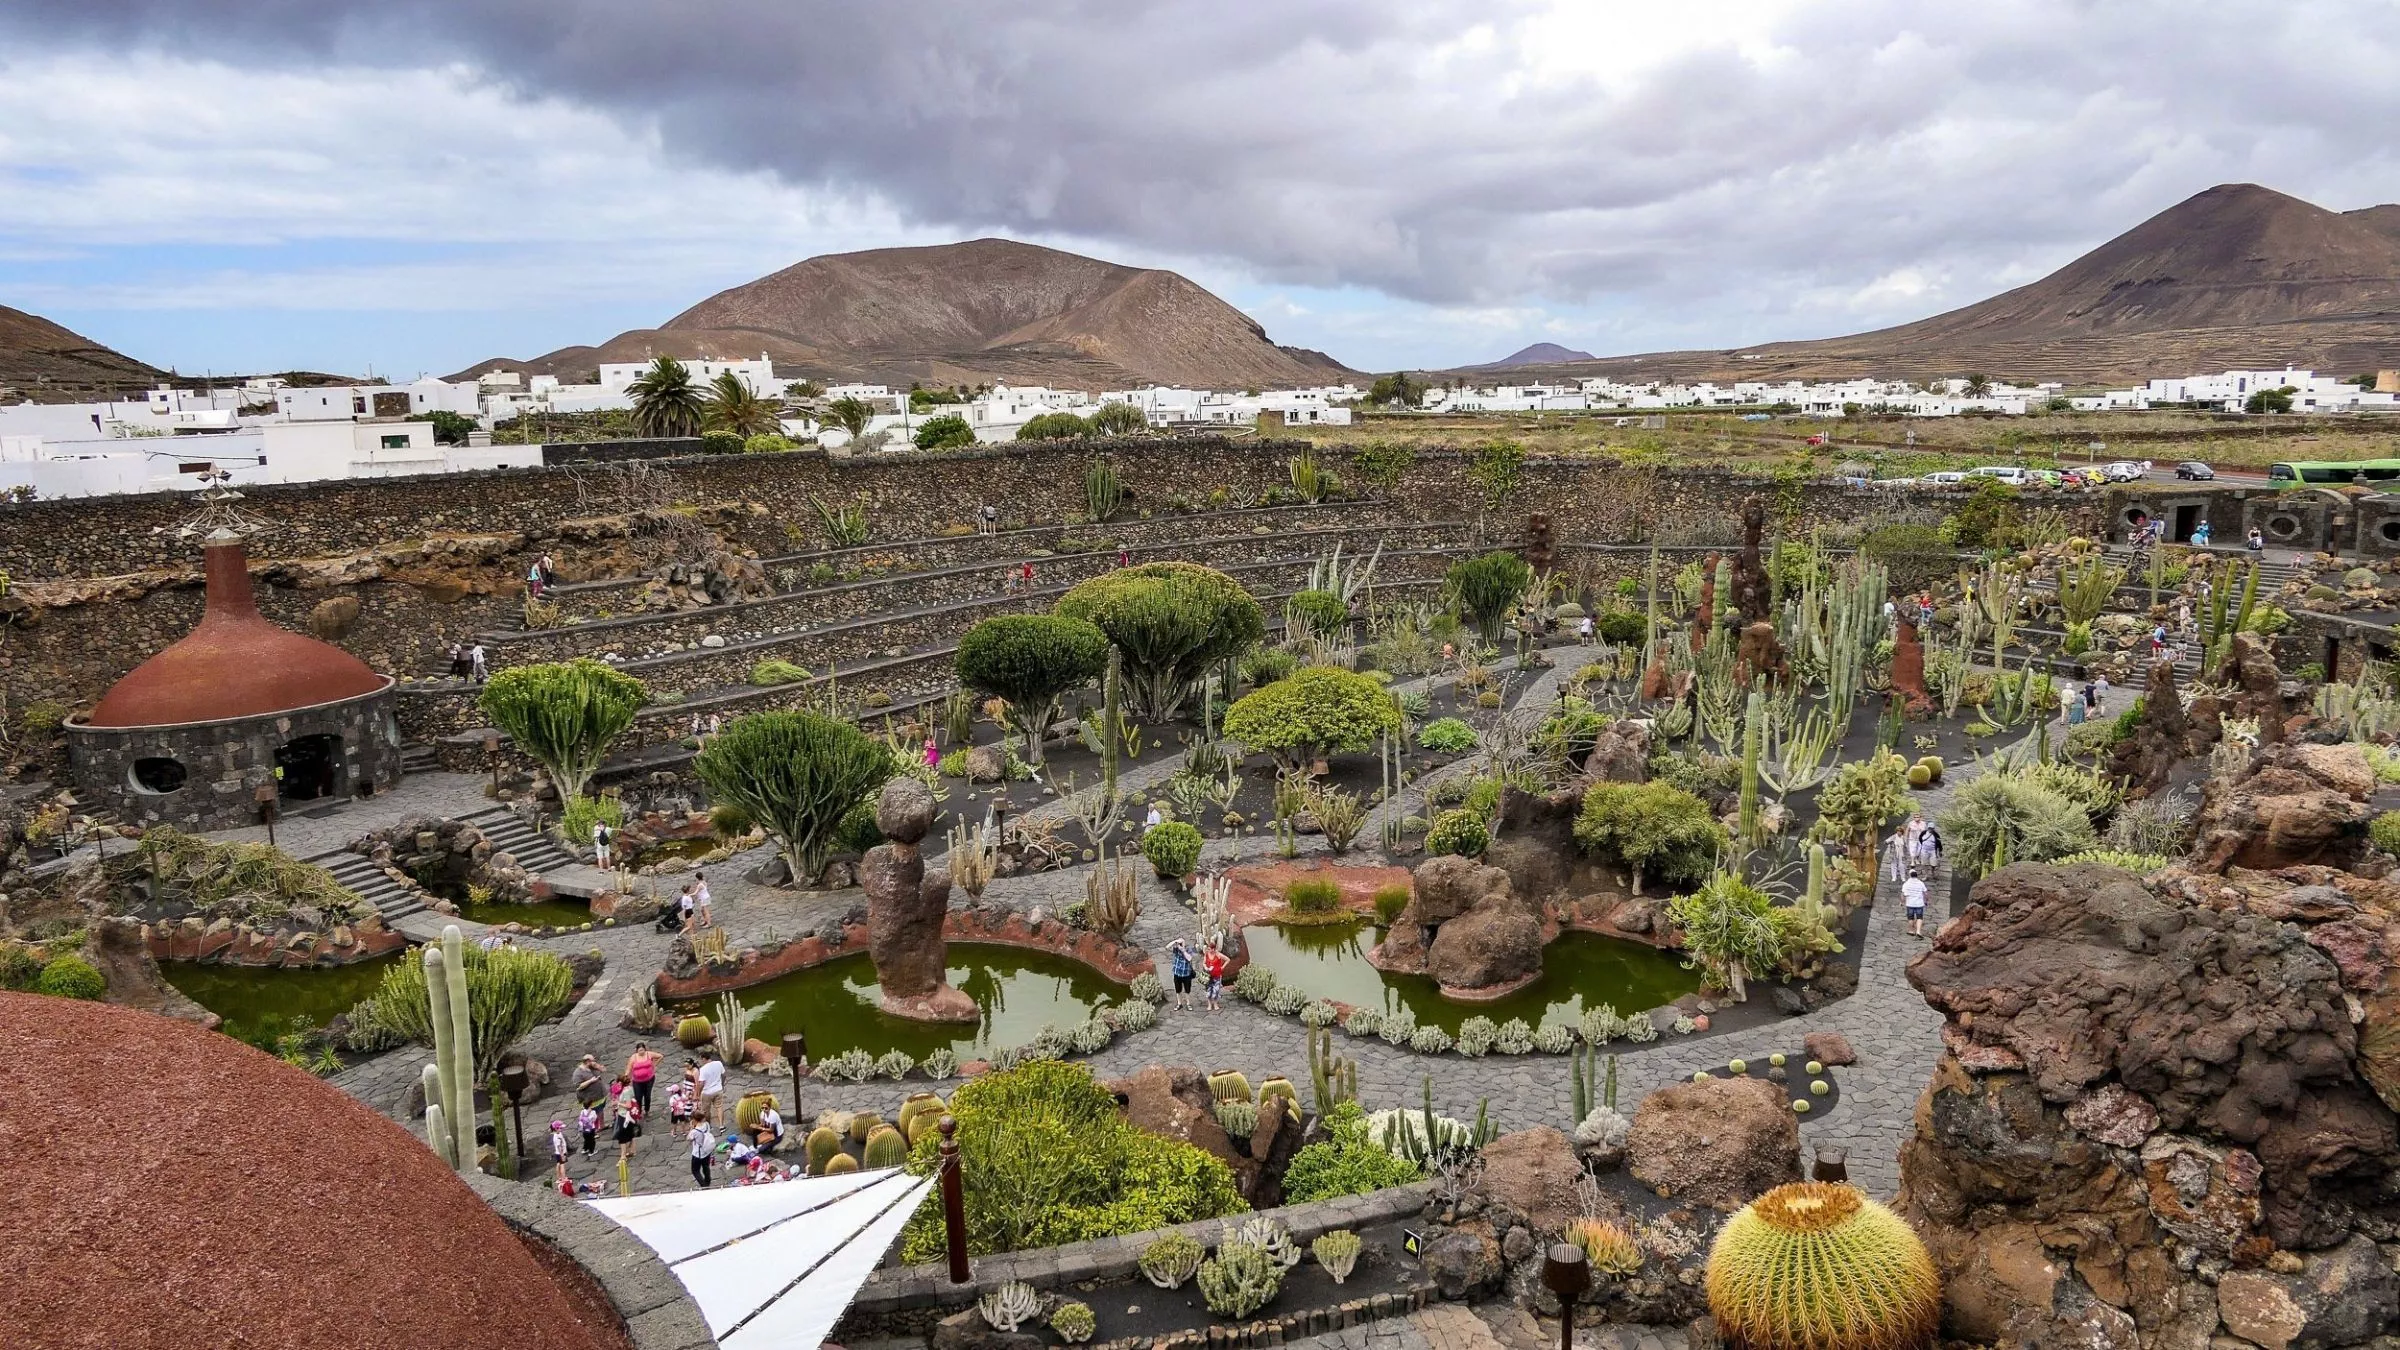 Panorama des von César Manrique erdachten Kaktusgarten